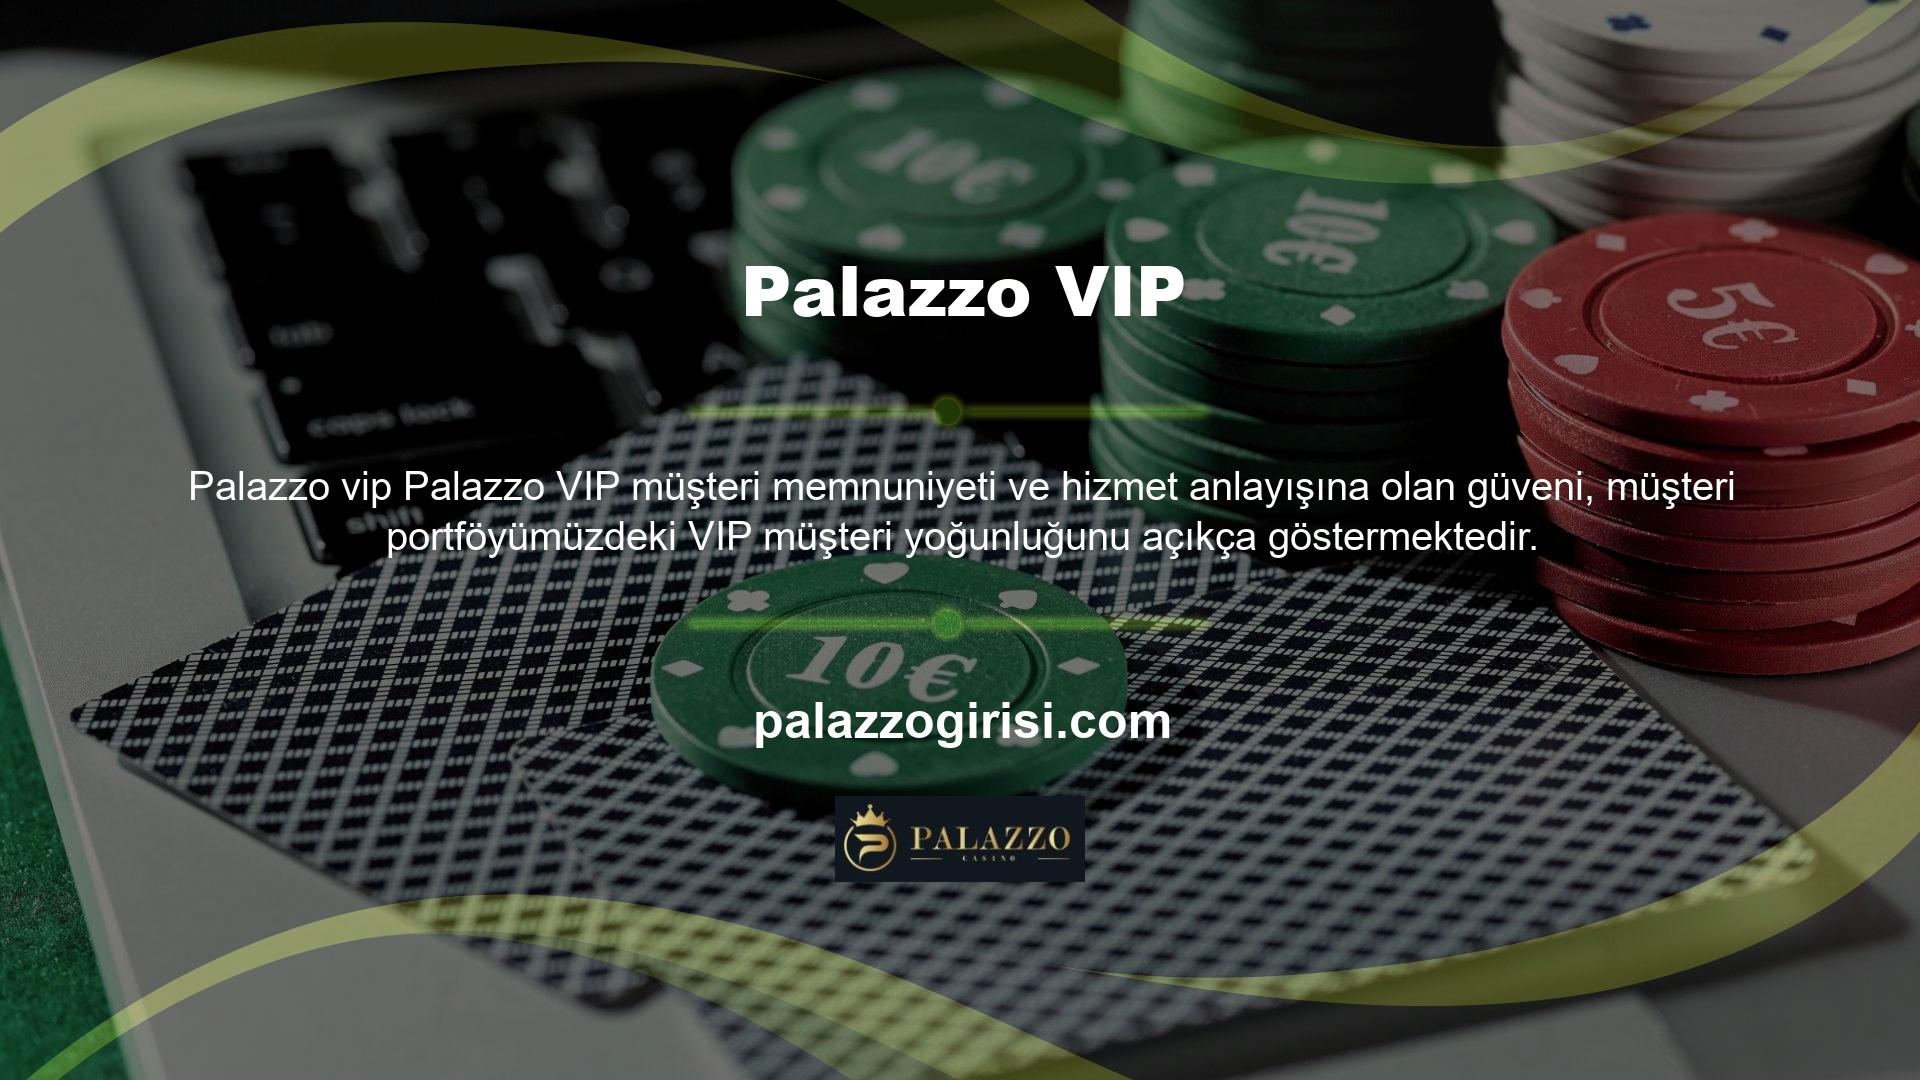 Palazzo, güvenilir ve hızlı programlama seçenekleri sunarak eğlence endüstrisindeki VIP müşteriler için gidilecek yer olmaya devam ediyor